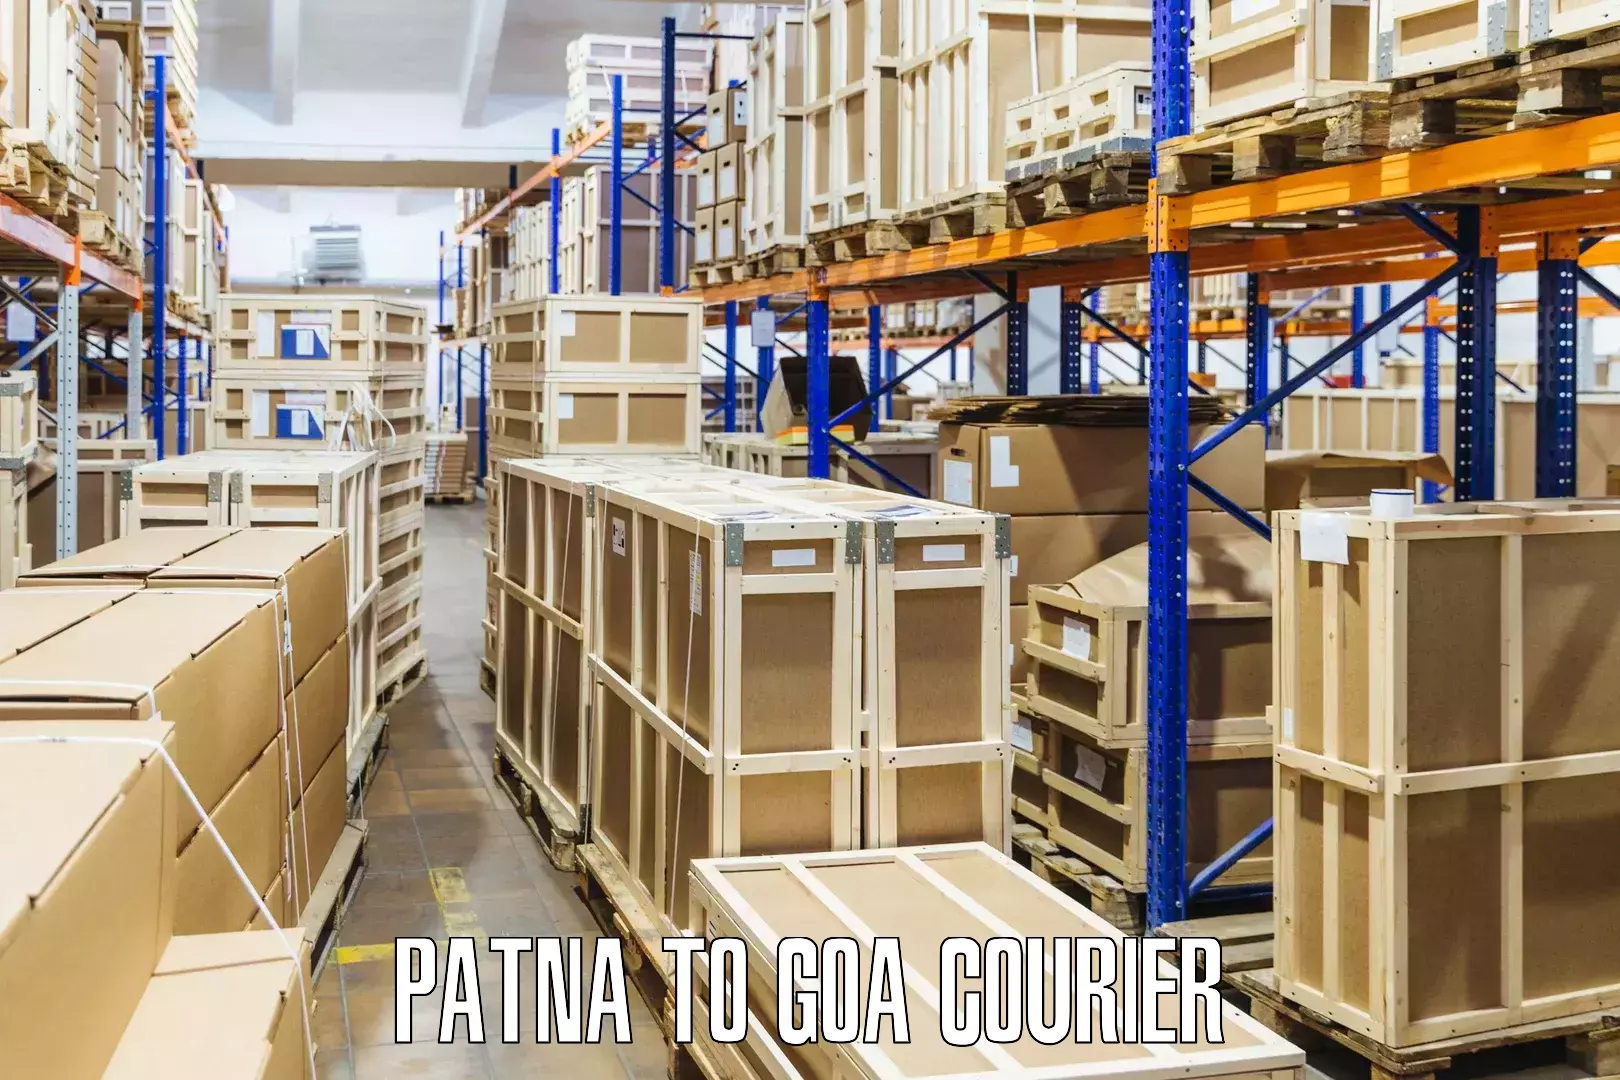 Quick parcel dispatch Patna to Goa